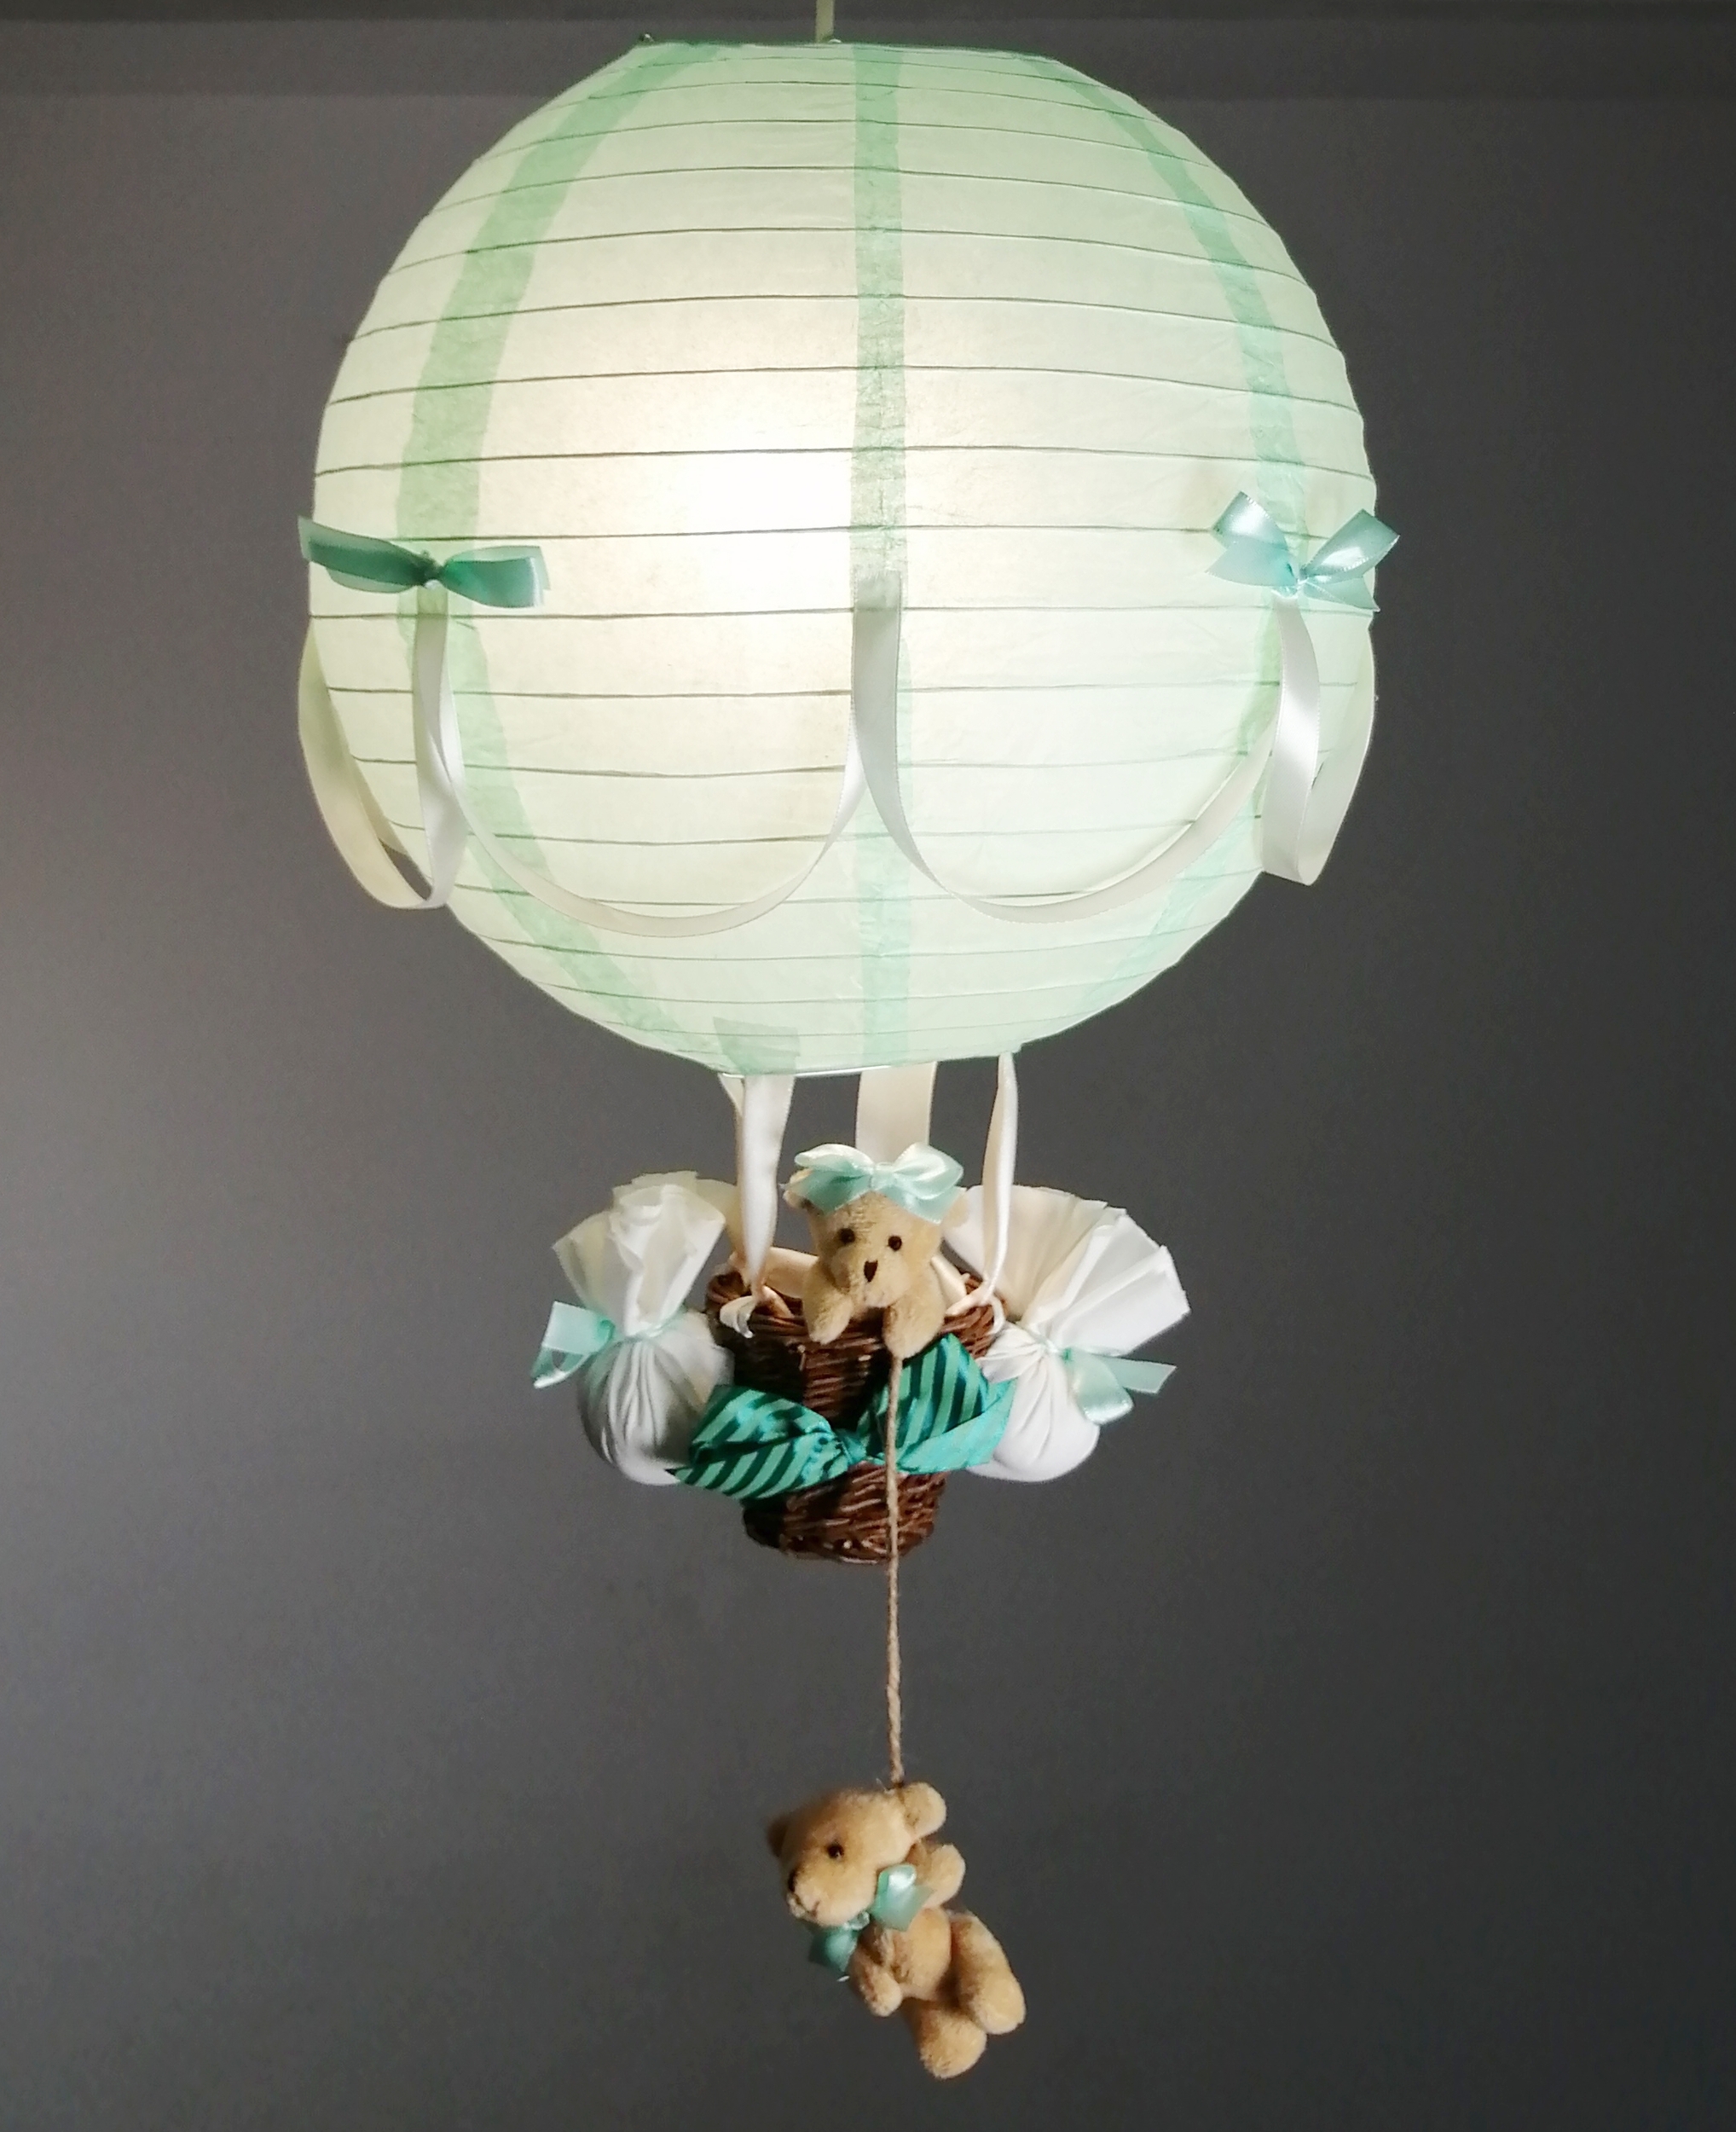 Lampe-montgolfiere-enfant-bebe-beige-vert-menthe-création artisanale-ours-decoration-mixte